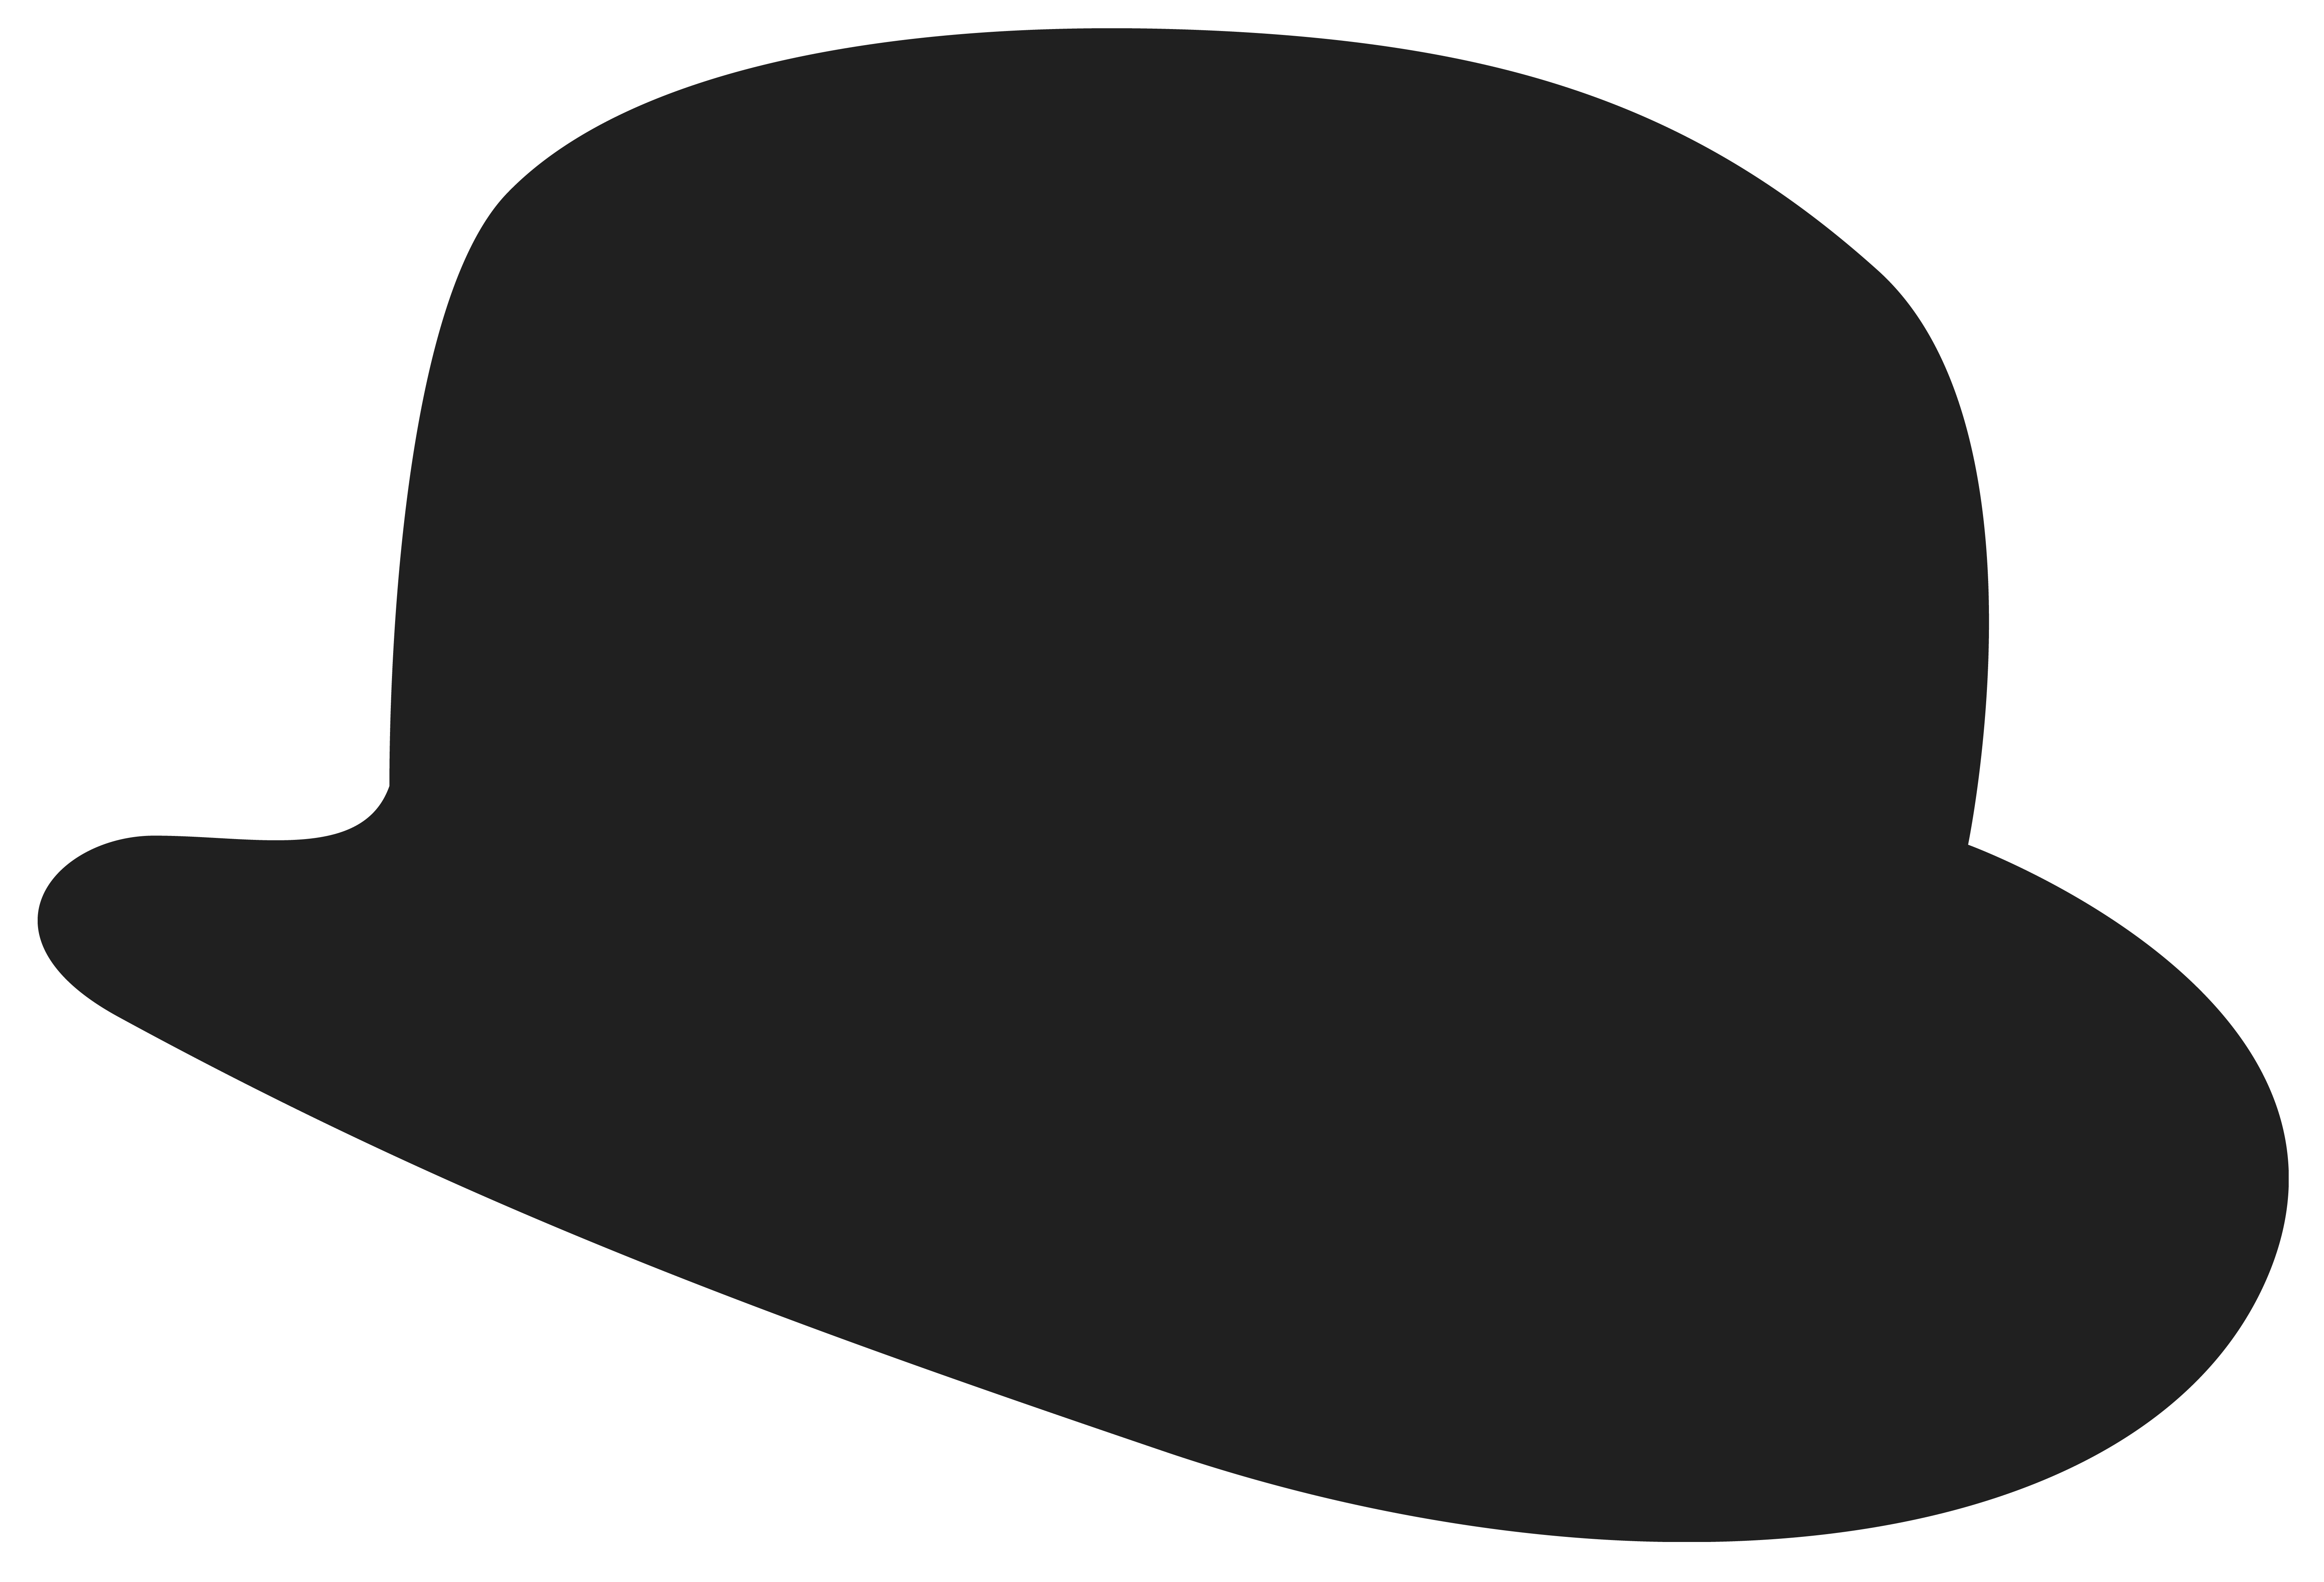 Bowler hat at getdrawings. Cap clipart silhouette